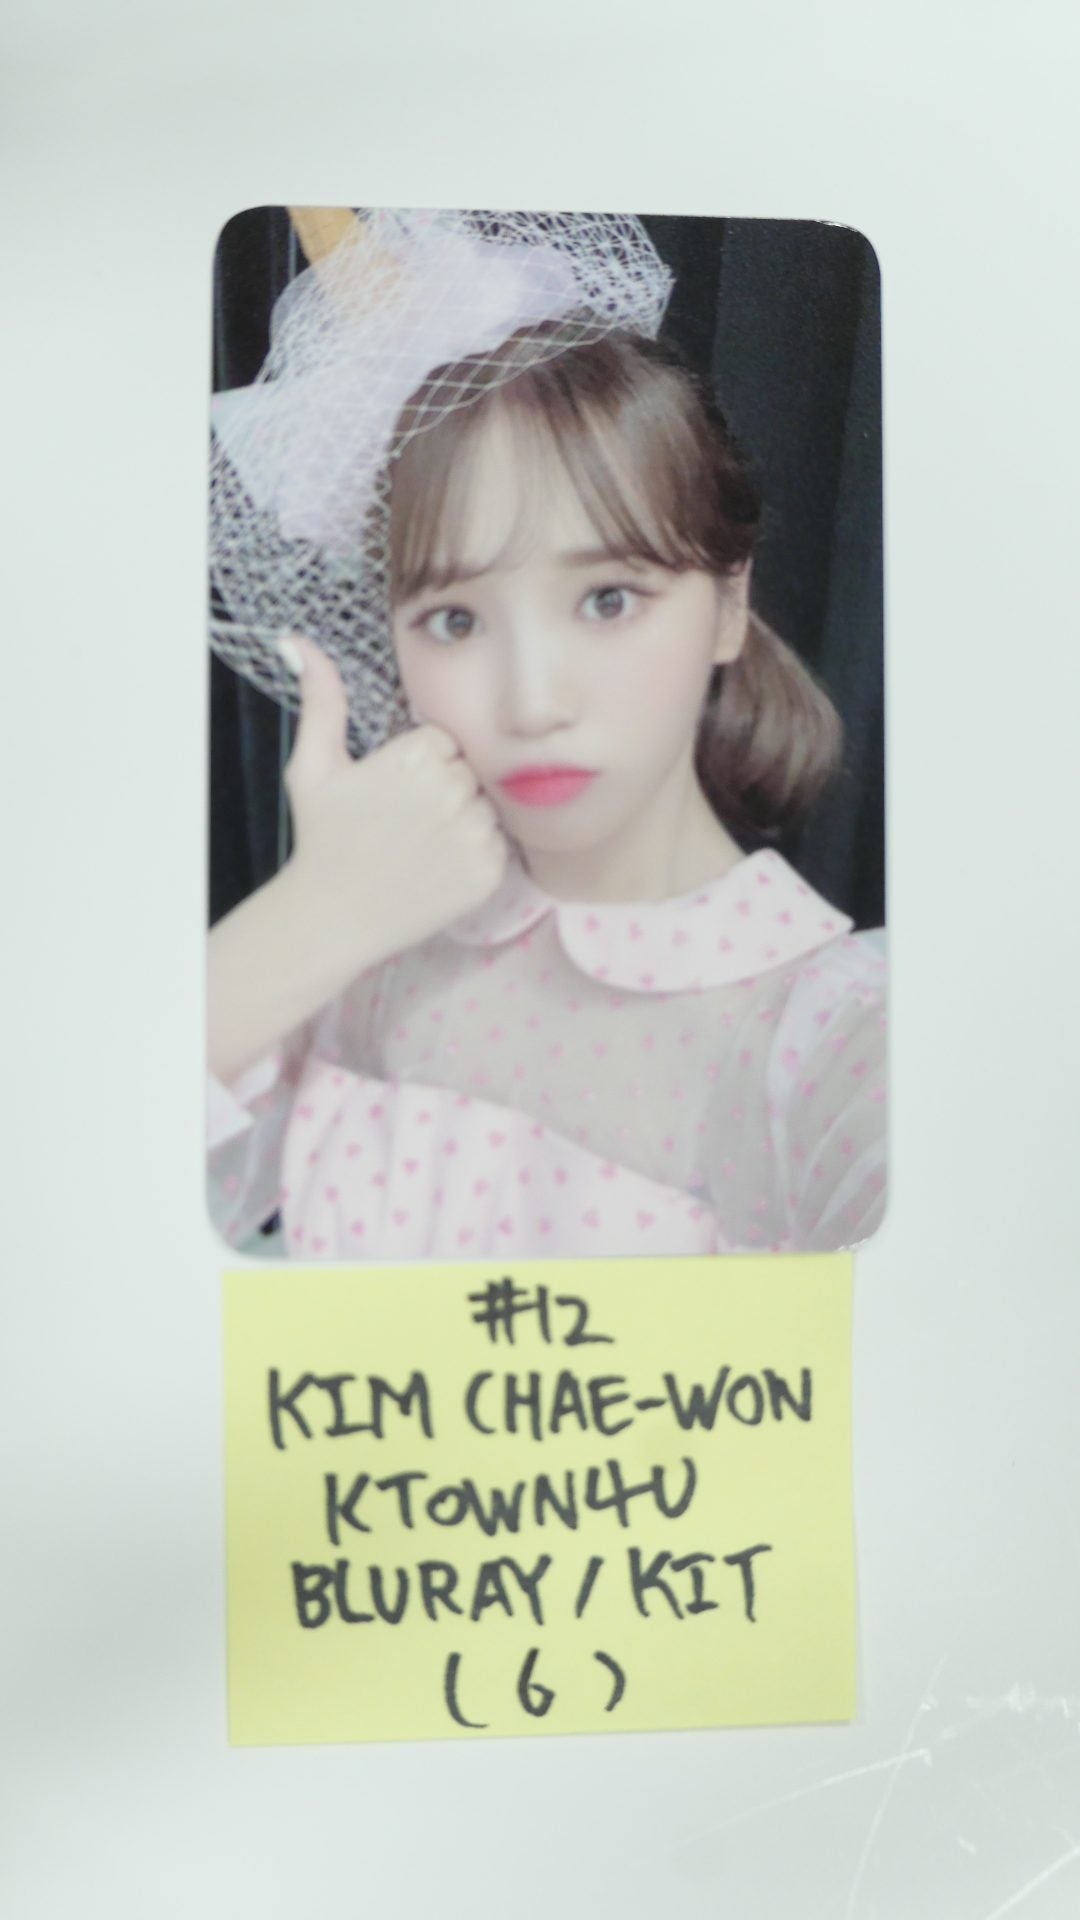 아이즈원 아이즈원 - Oneiric Theater Ktown4u 예약판매 포토카드